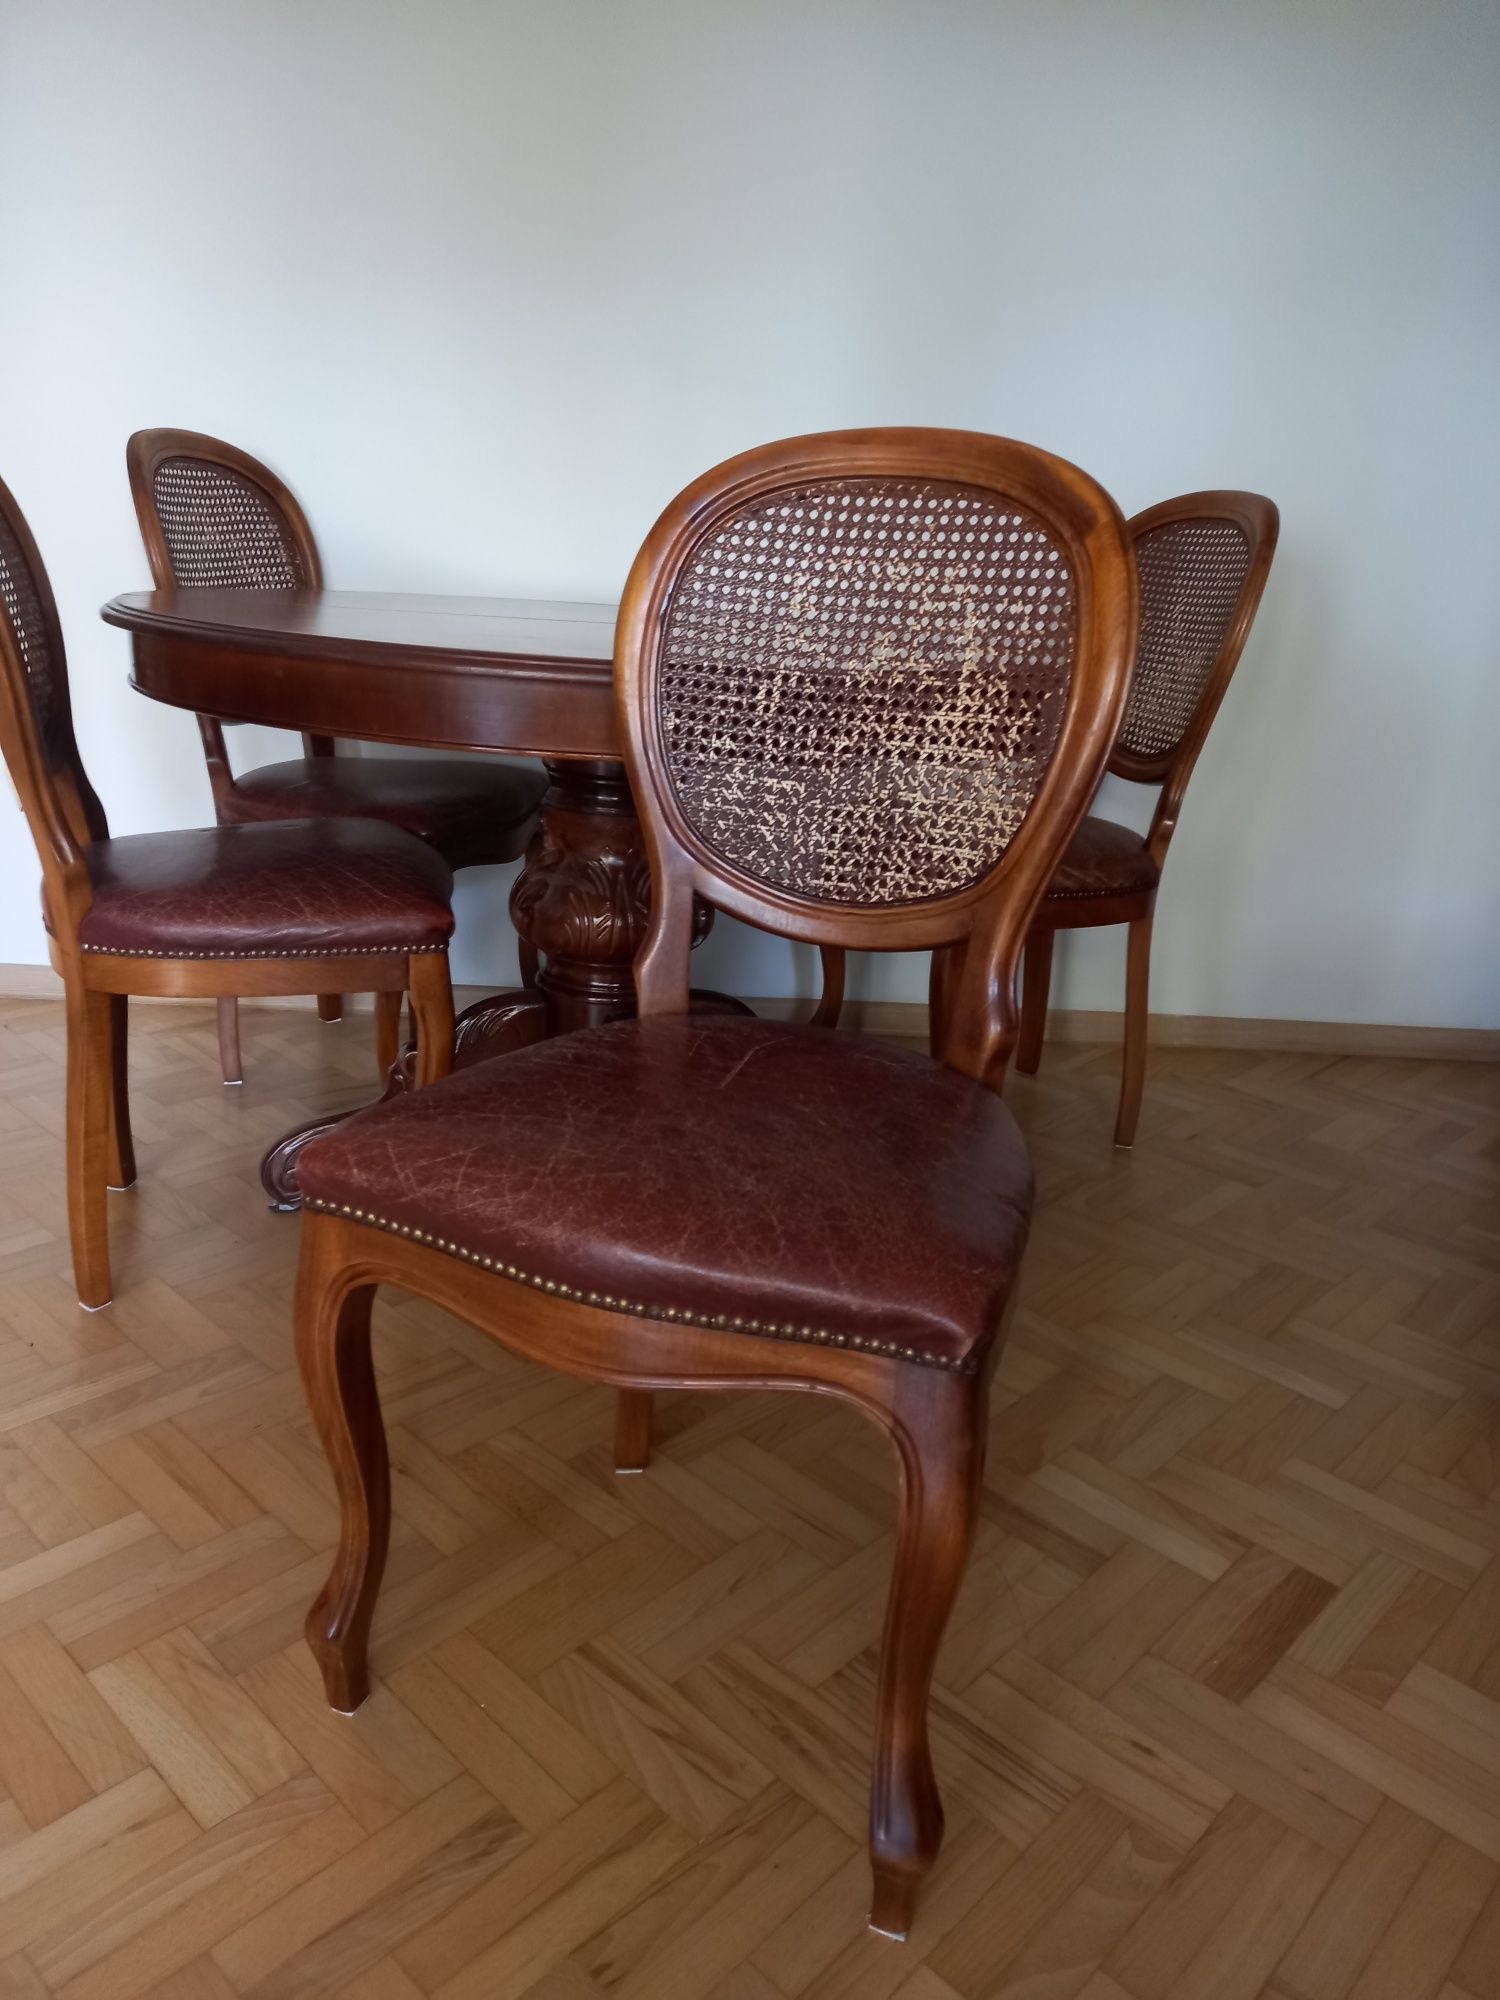 Stół retro plus krzesła z plecionka wiedeńską